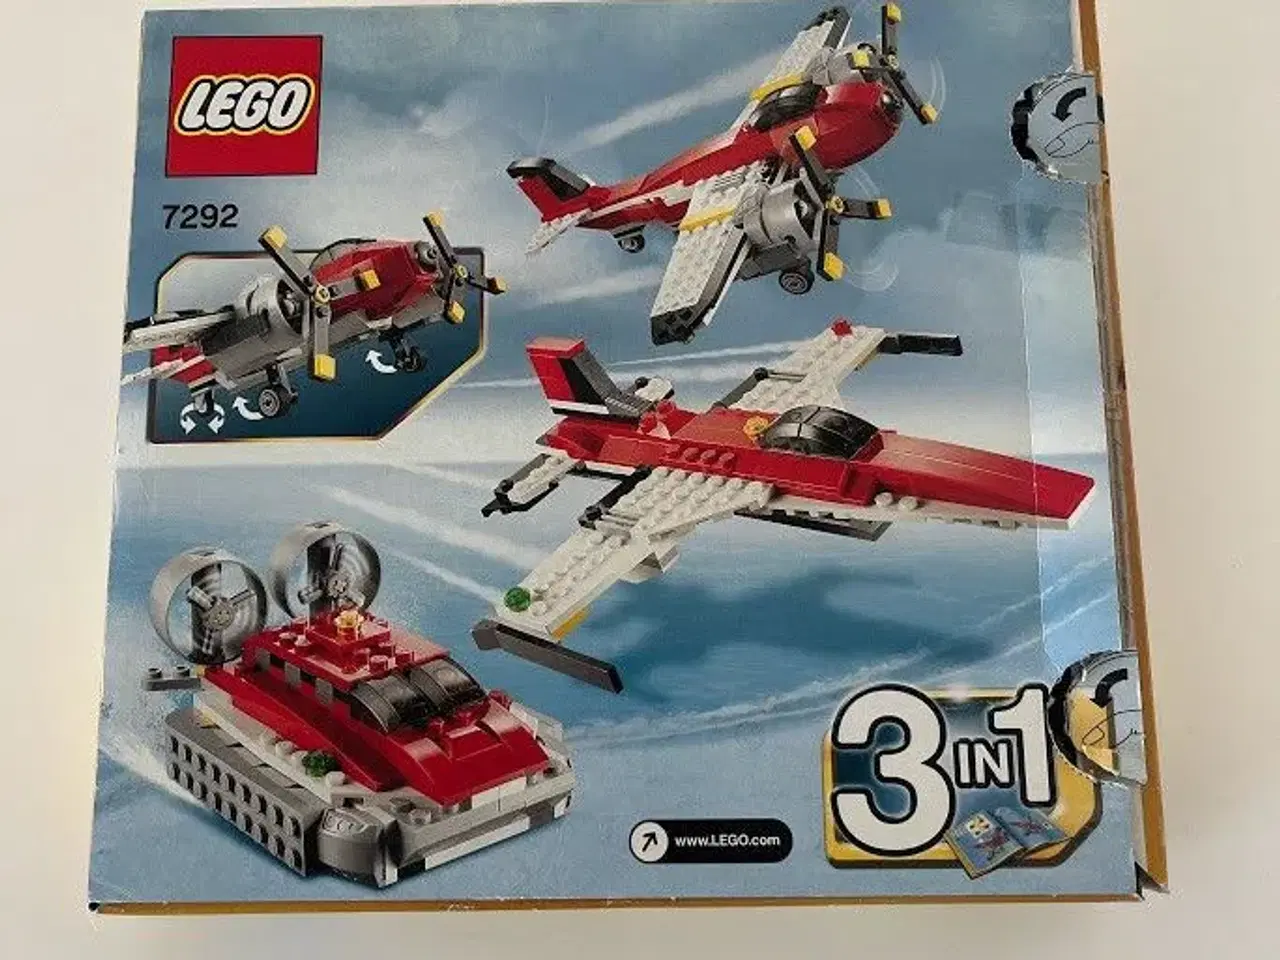 Billede 2 - LEGO City 3 i 1 nr. 7292 - Fly og hovercraft